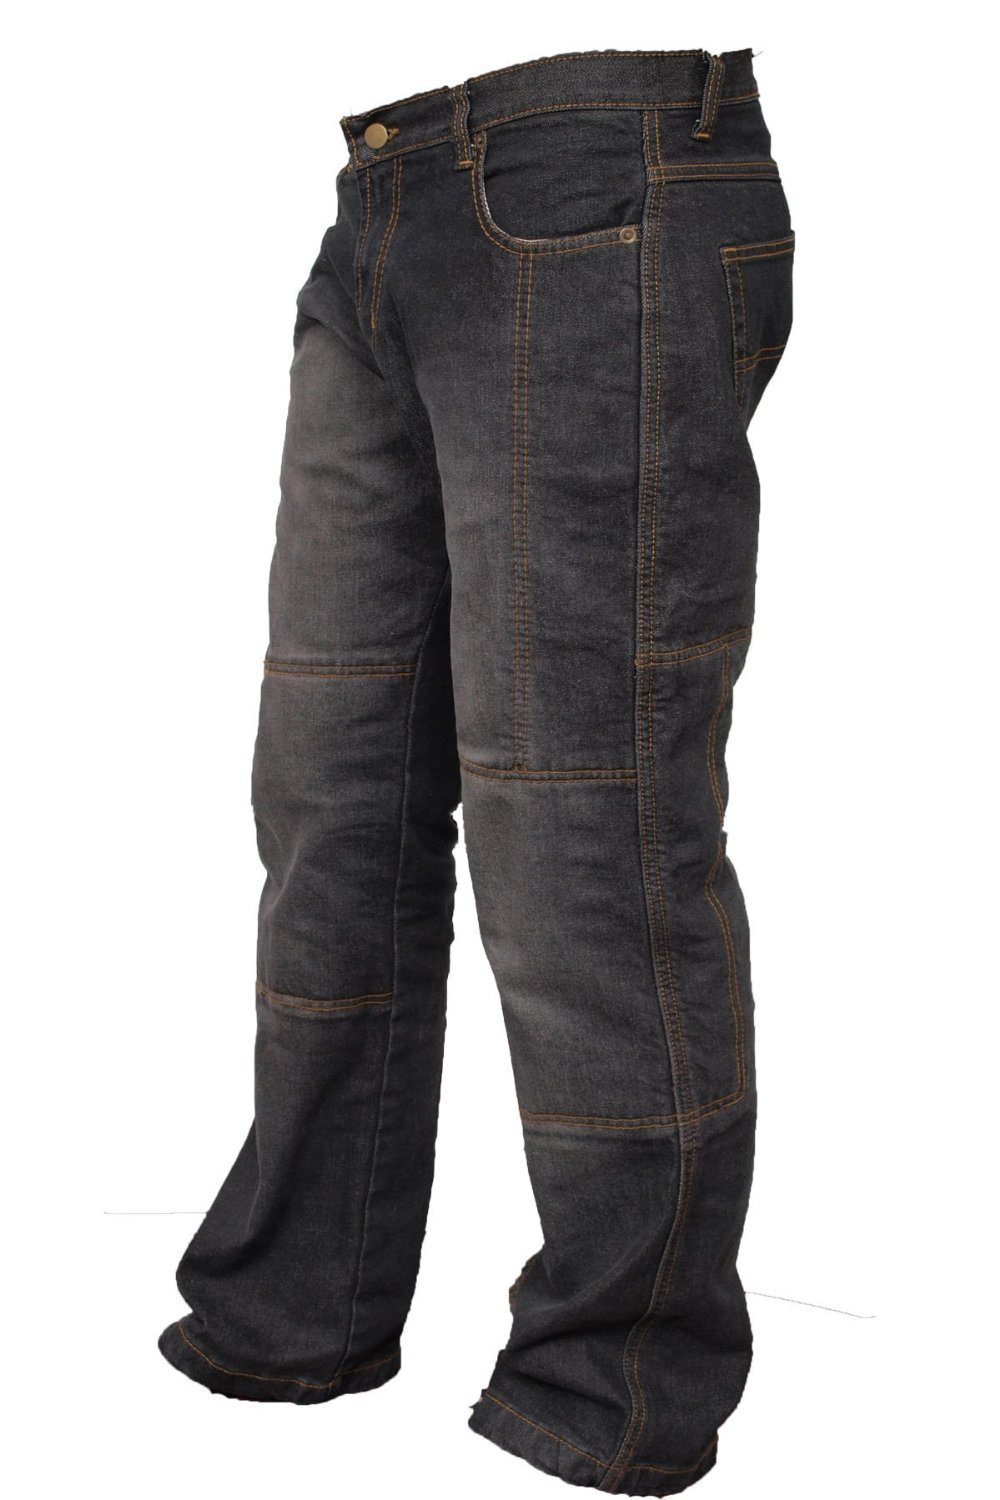 newfacelook Motorradhose Rüstungen Motorrad Hose Jeans Kommt mit Aramid verstärkt Schutzauskleidung, 32W / 30L, Blu